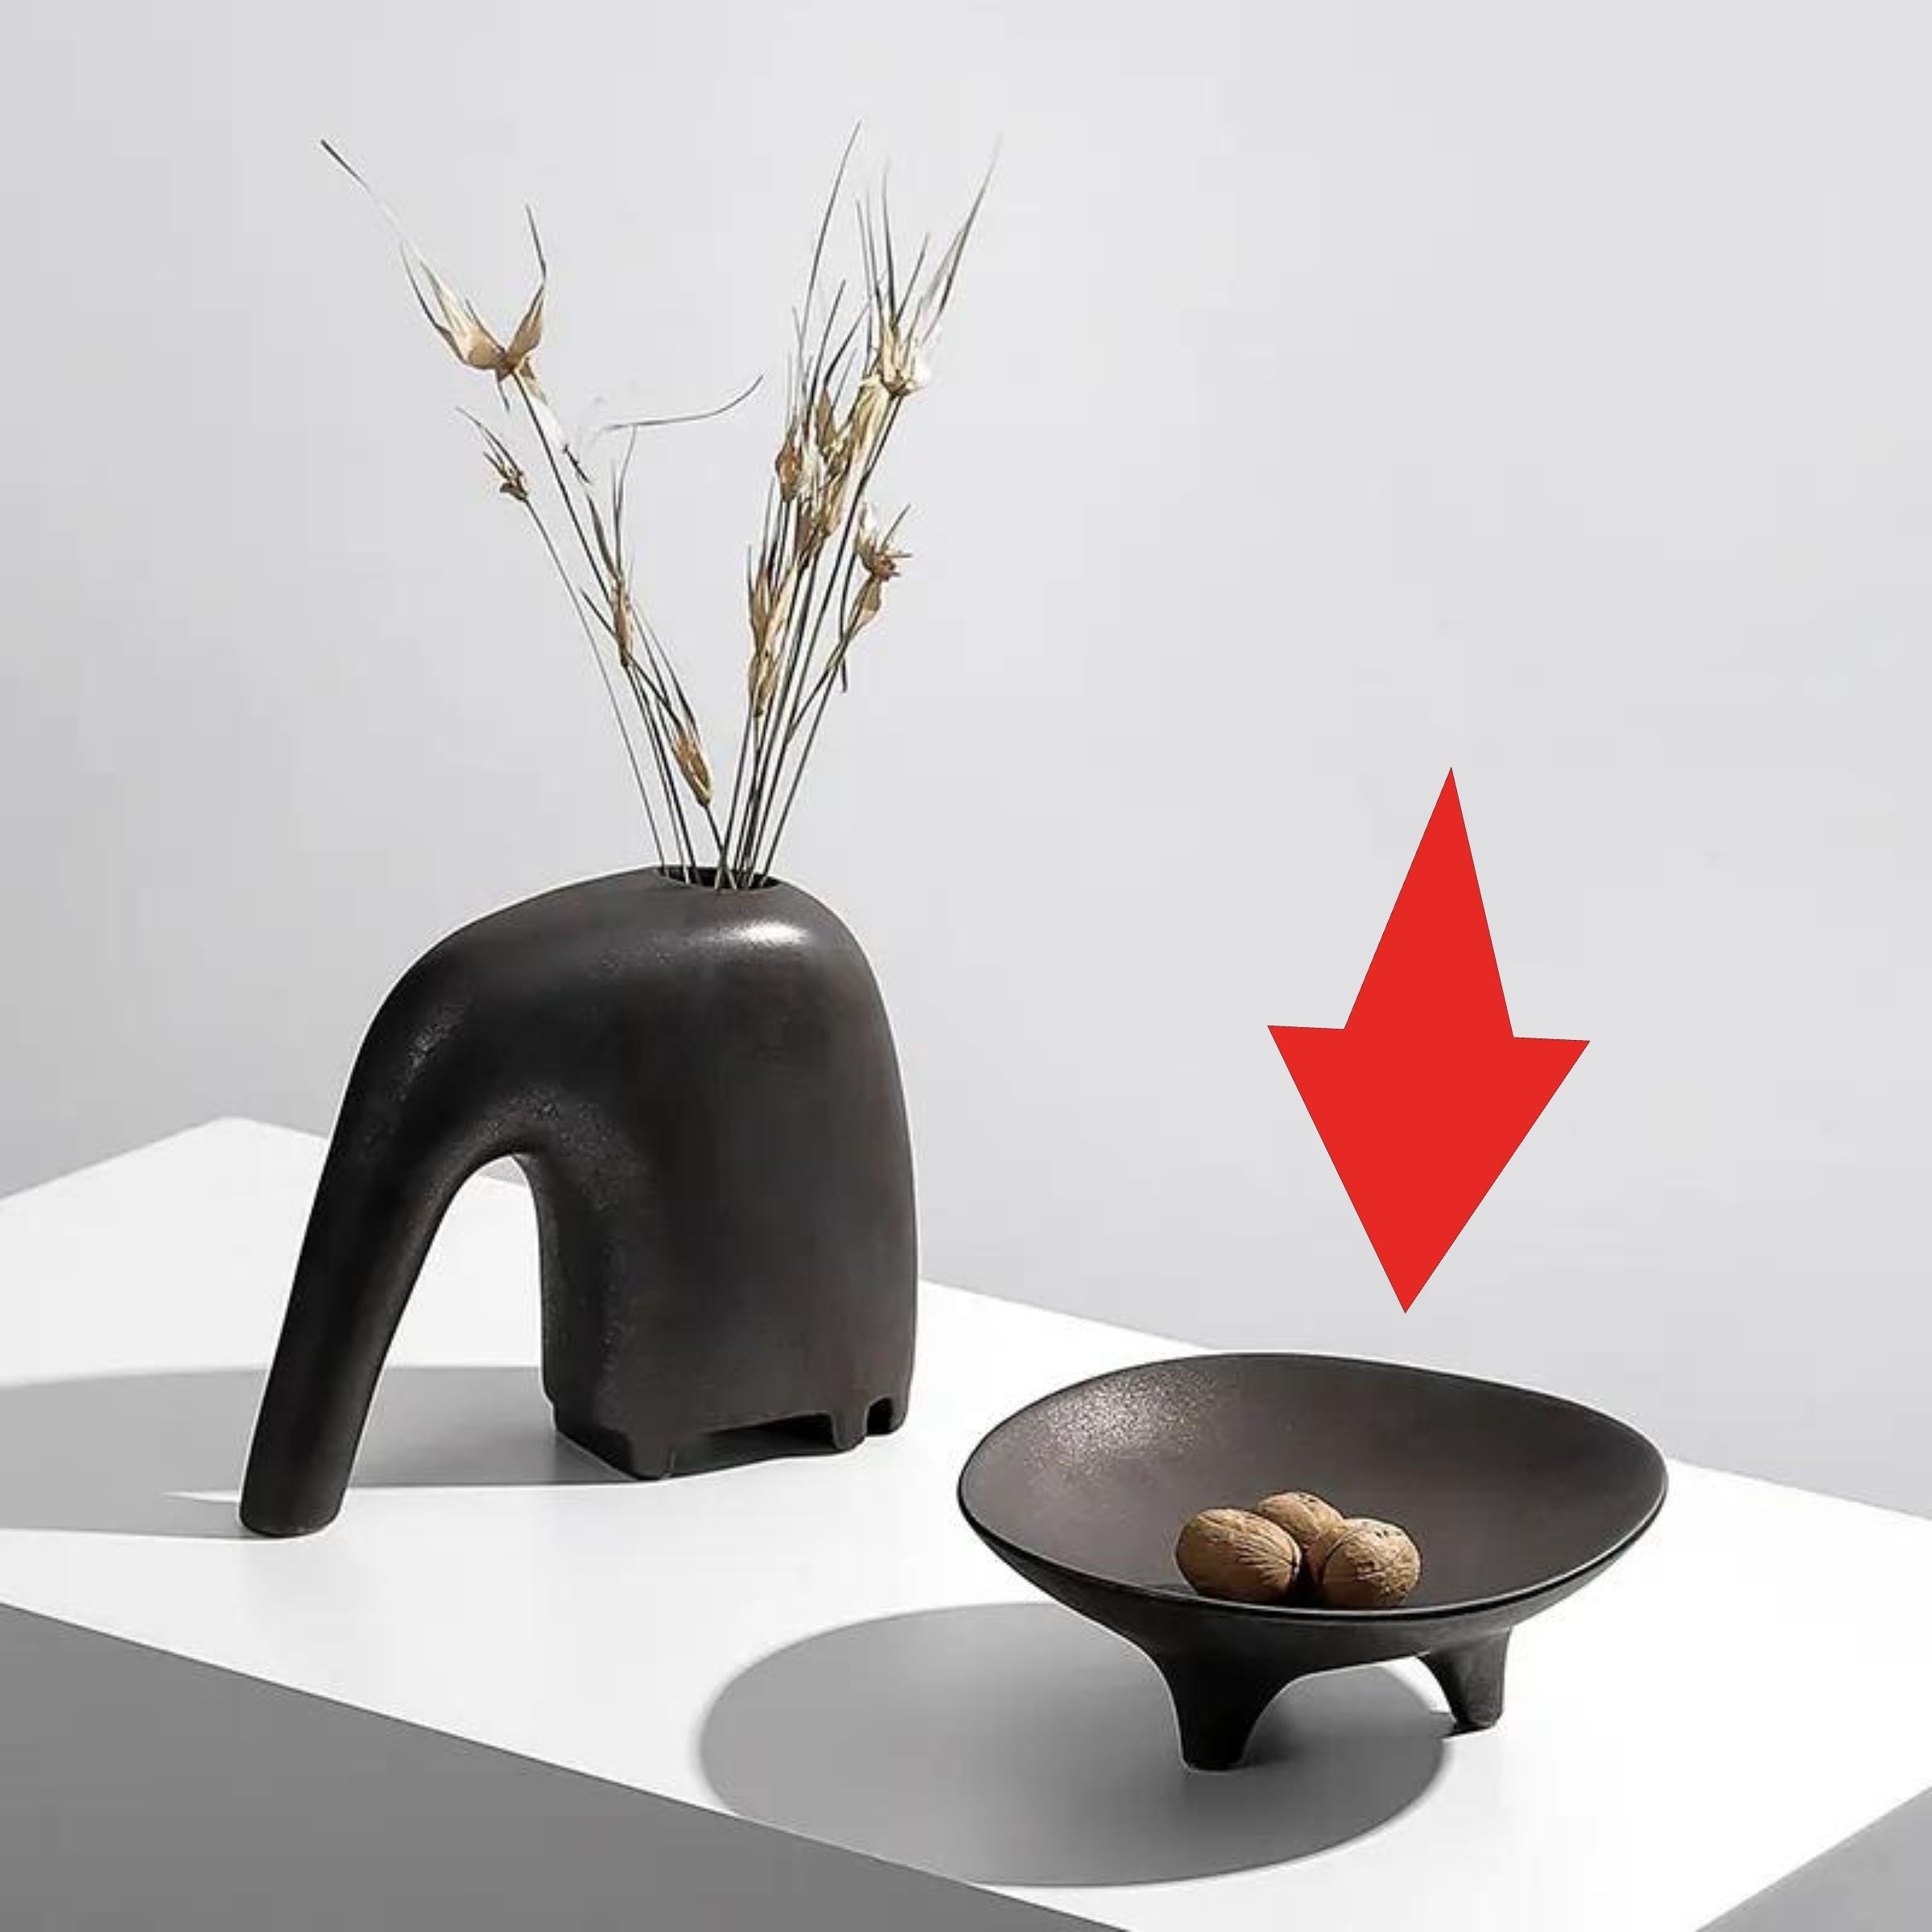 Ceramic Bowl With Feet Fd-D22044 -  Bowls | وعاء سيراميك مع قدم - ebarza Furniture UAE | Shop Modern Furniture in Abu Dhabi & Dubai - مفروشات ايبازرا في الامارات | تسوق اثاث عصري وديكورات مميزة في دبي وابوظبي